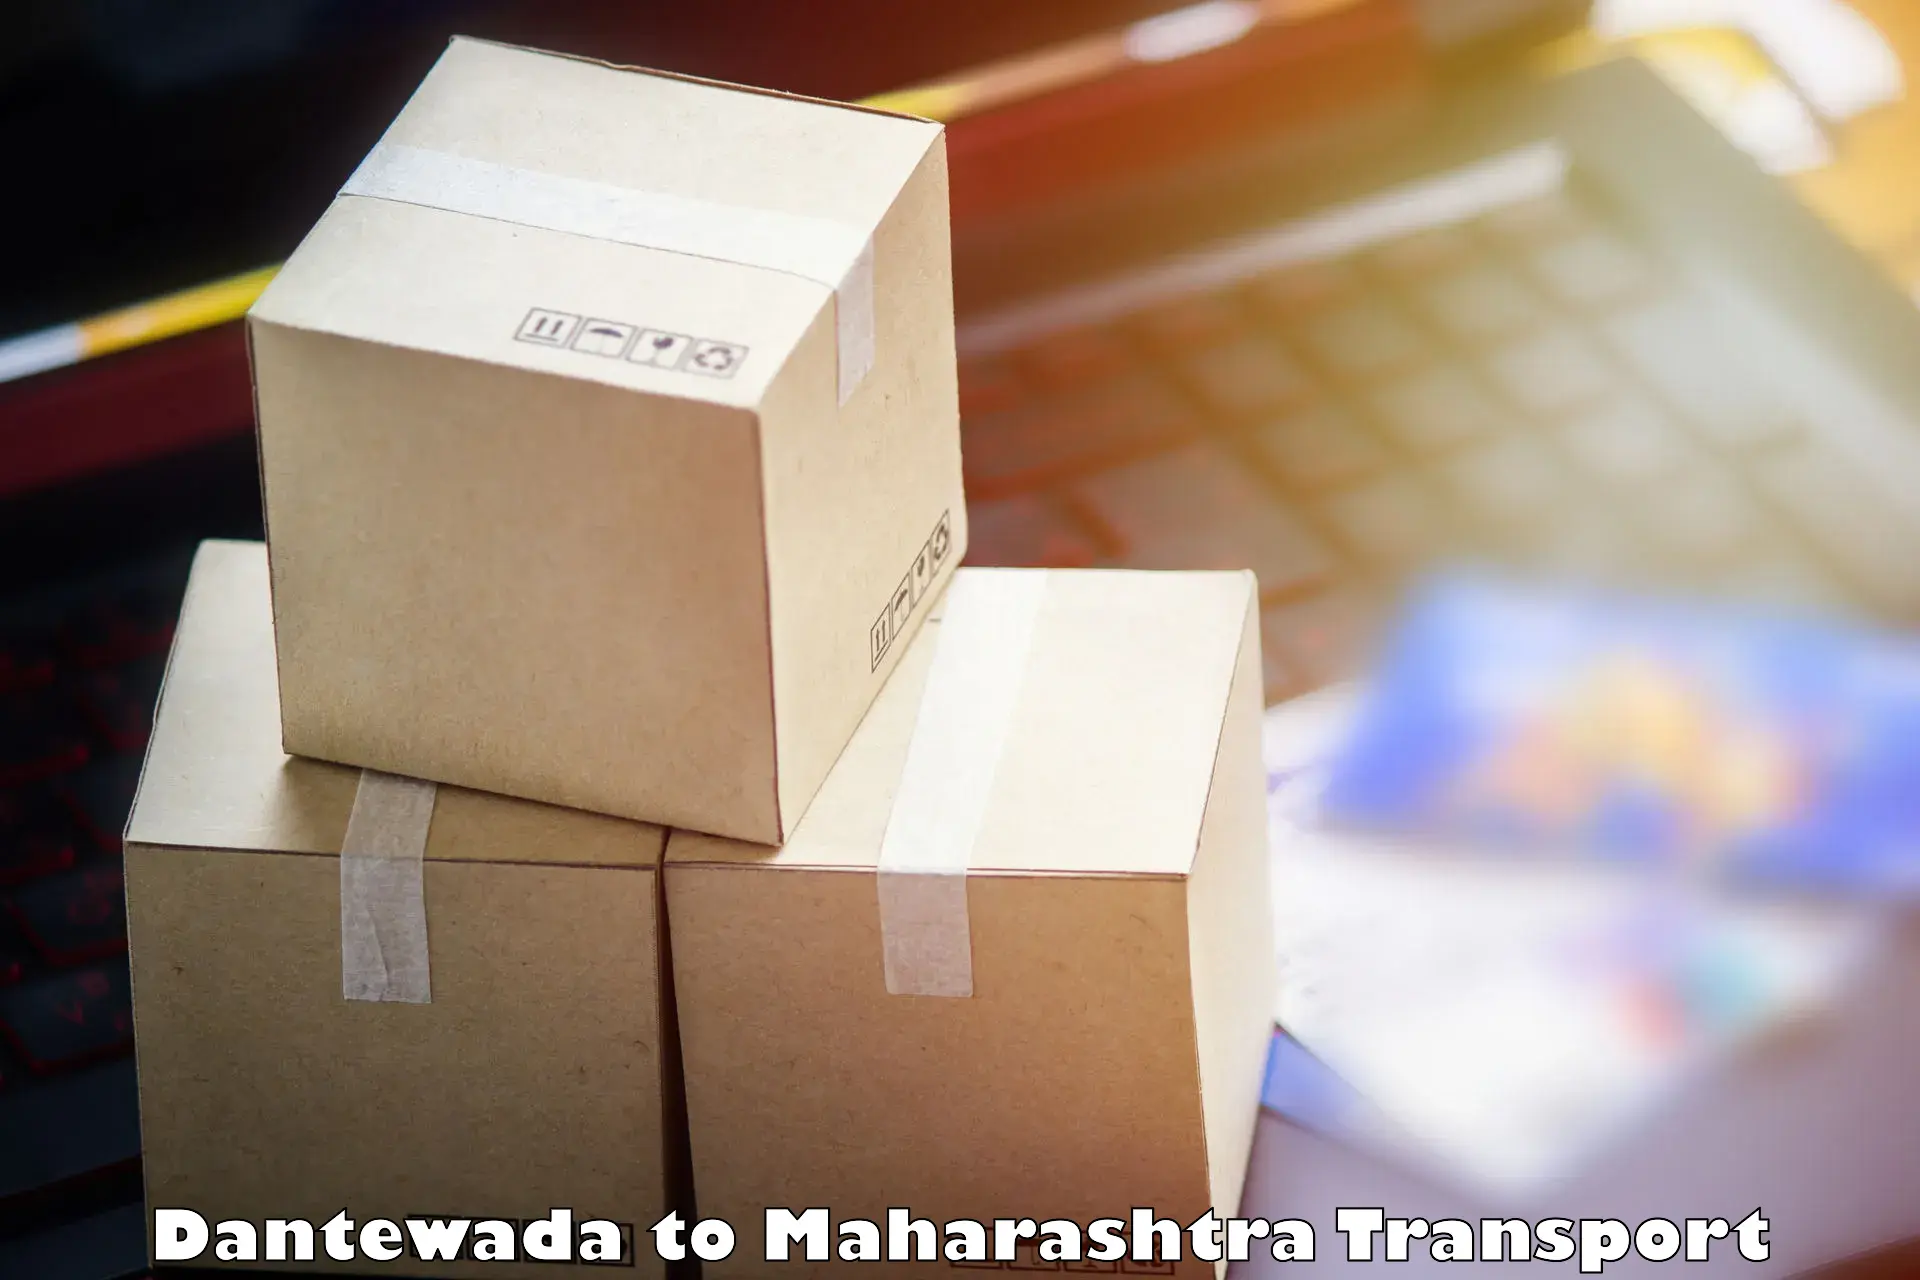 Transportation services Dantewada to Bhandara